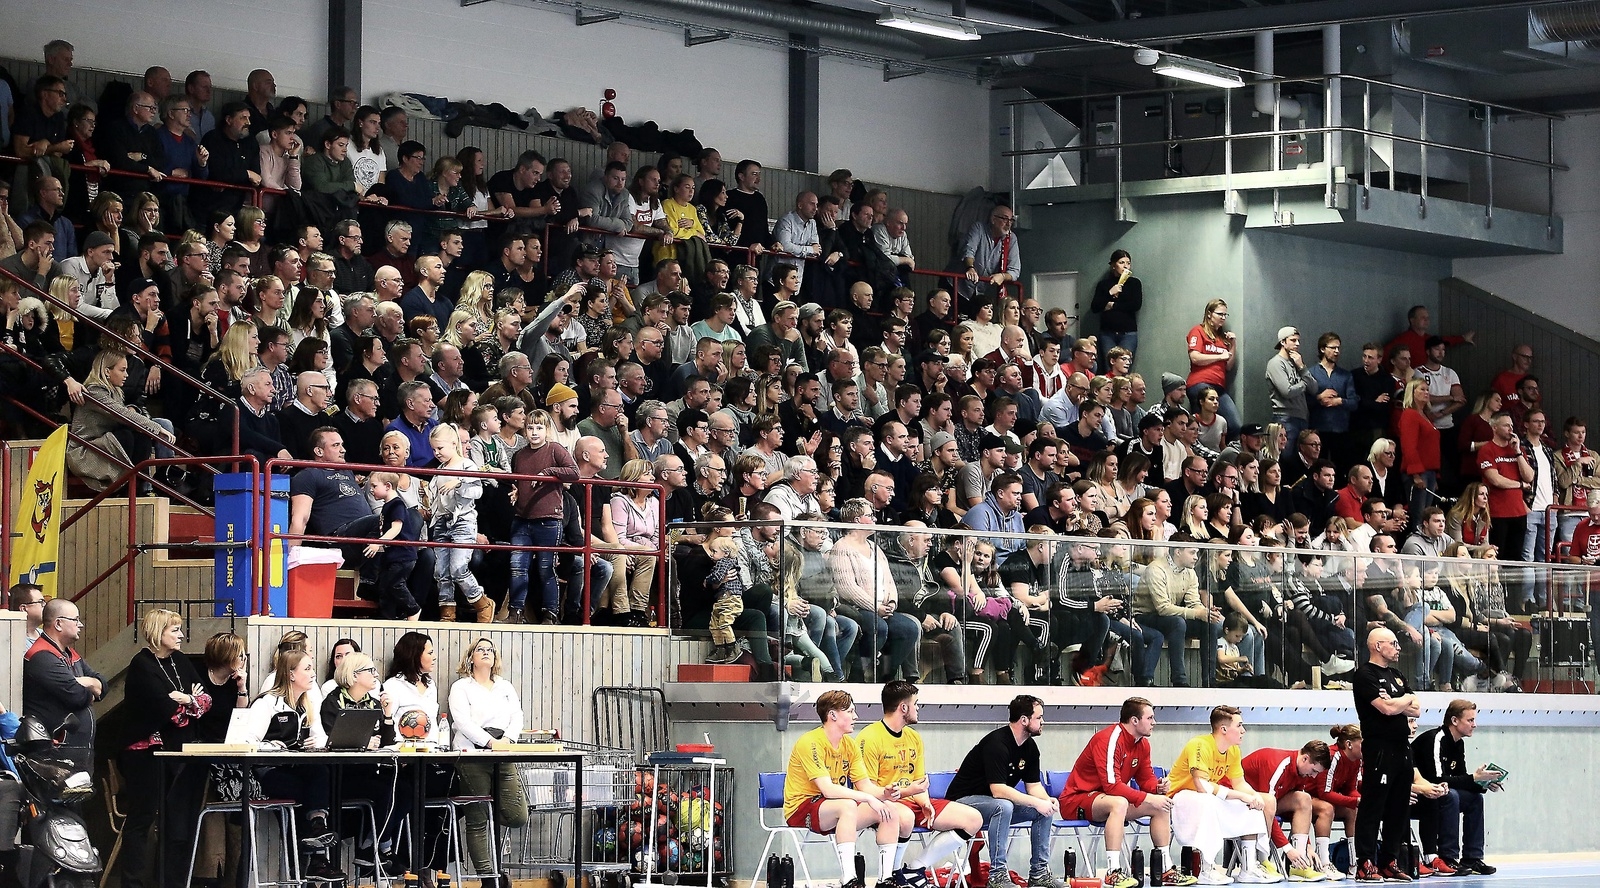 628 åskådare hade tryckt in sig i Furutorpshallen och det hördes matchen igenom. Foto: Stefan Sandström